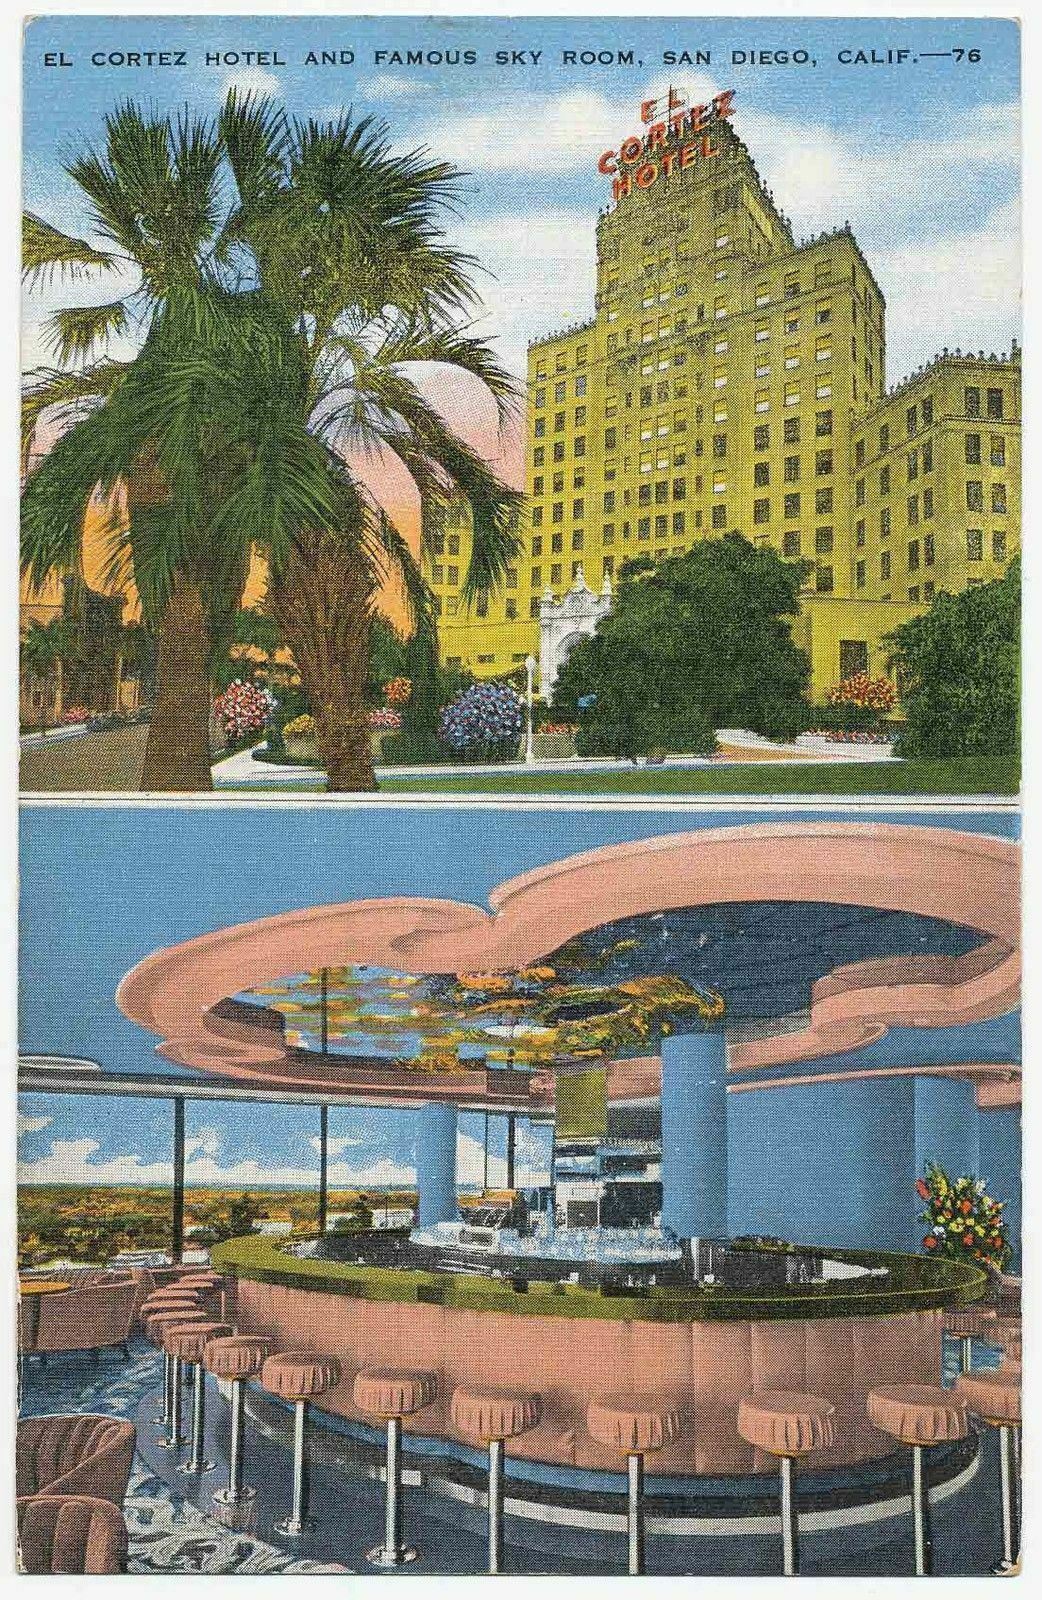 The Sky Room, El Cortez Hotel, San Diego, California 